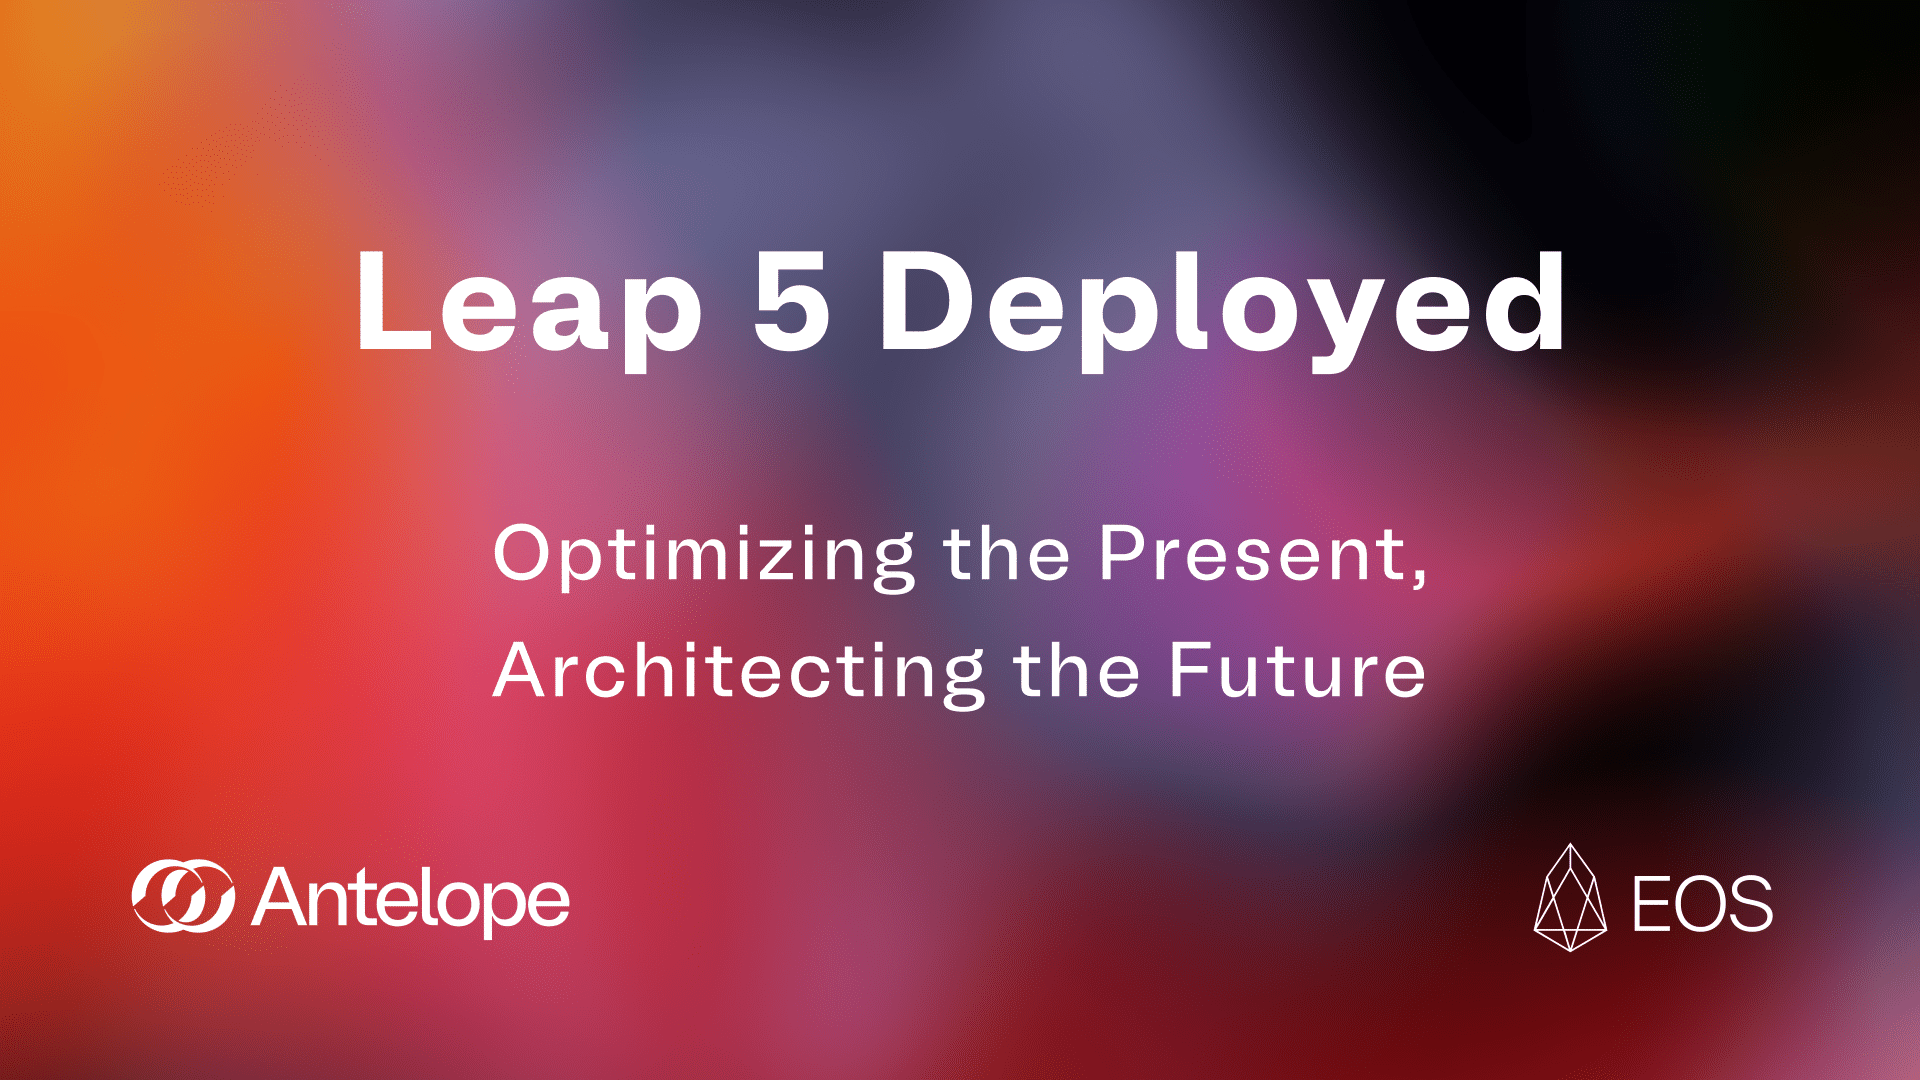 Leap 5 Deployed: Optimizing the Present, Architecting the Future